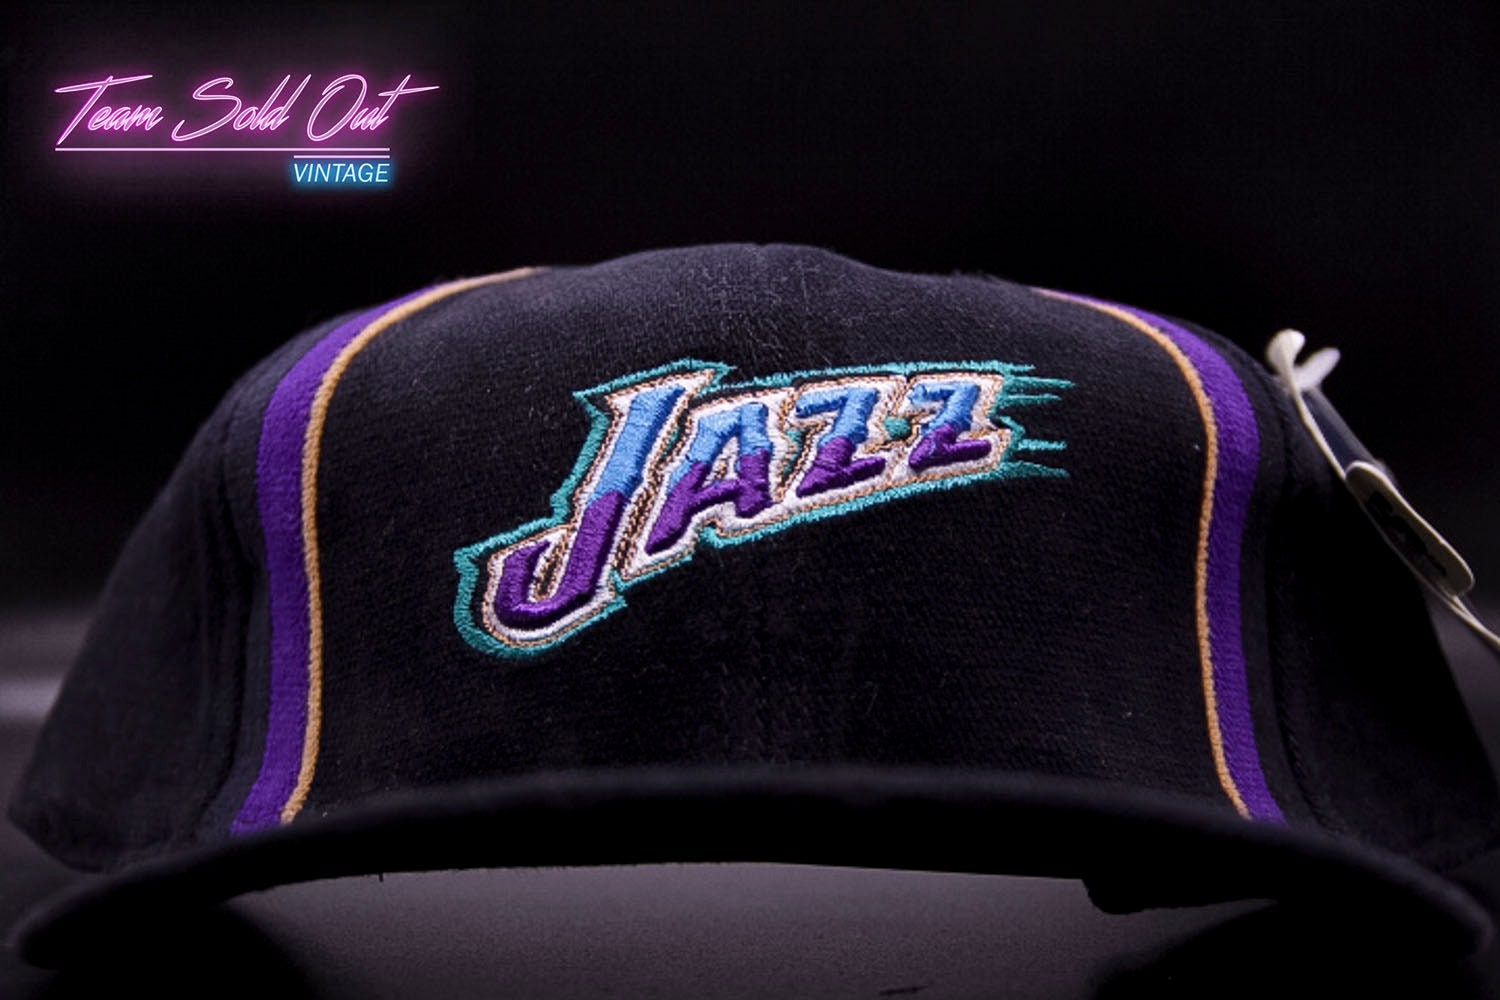 VTG UTAH JAZZ THE GAME “Split Bar” Snapback HAT 1990’s UNWORN NEW NBA Rare  OG